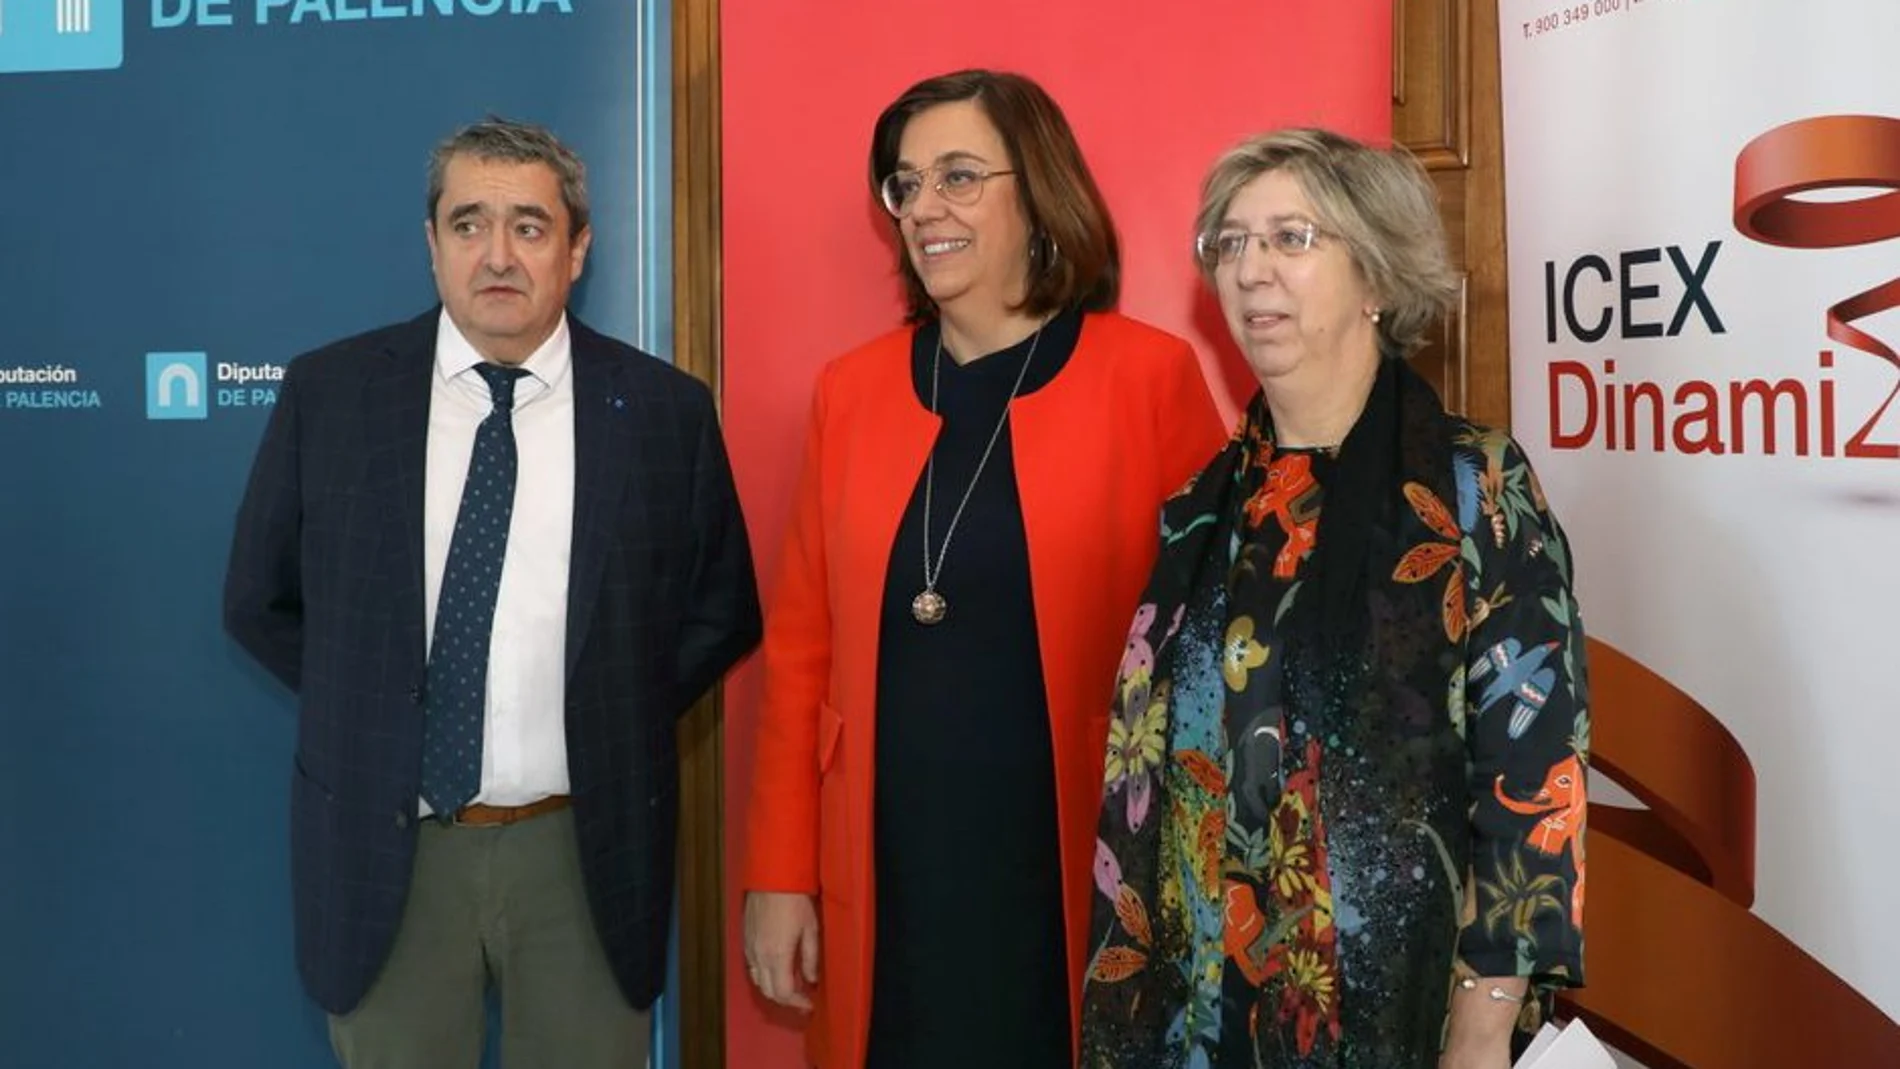 La presidenta de la Diputación de Palencia, Ángeles Armisén, junto a la directora territorial del ICEX, Isabel Clavero